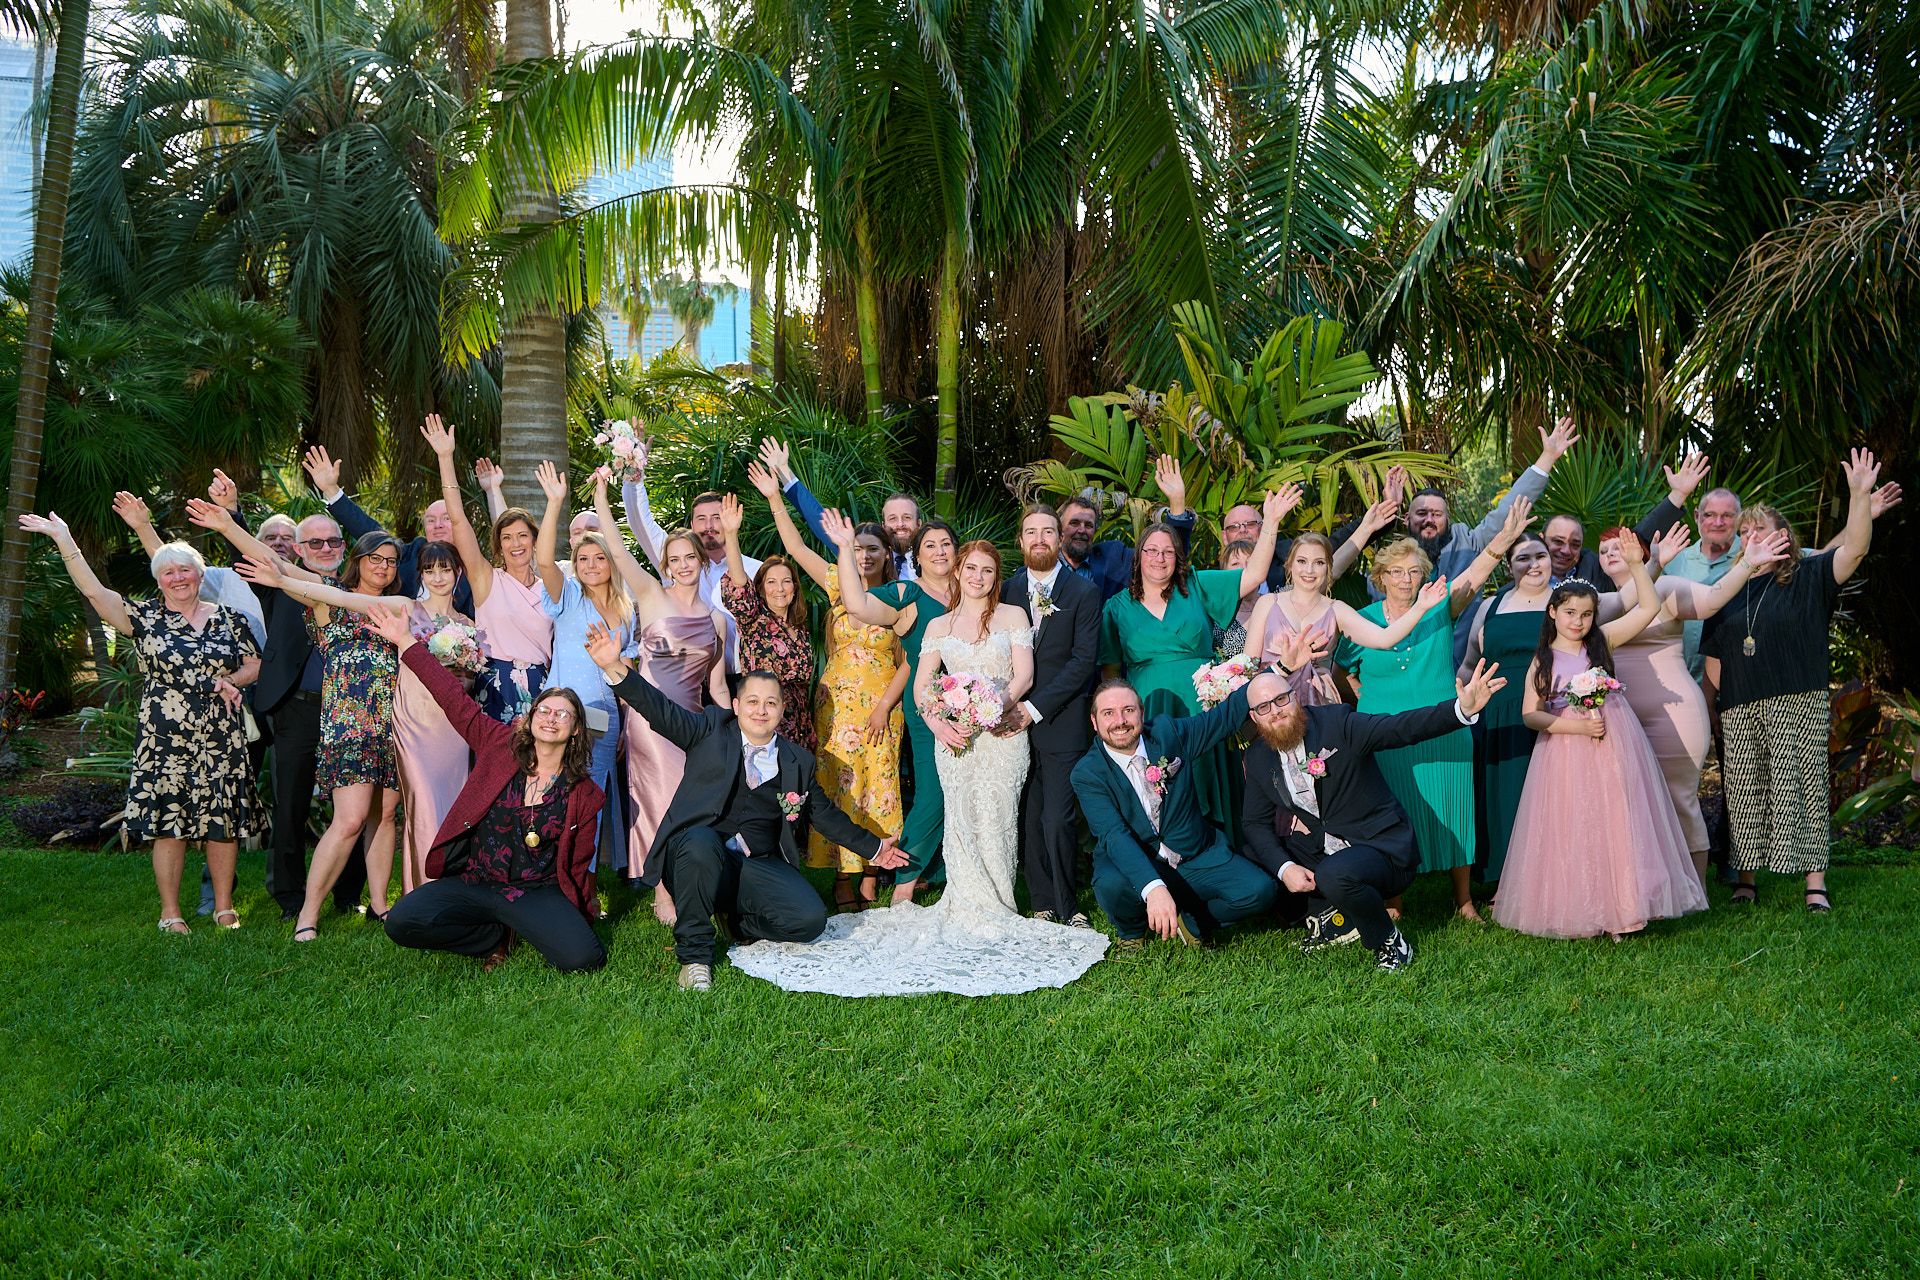 Wedding Group Photo at Royal Botanic Gardens, Sydney. Photography By orlandosydney.com